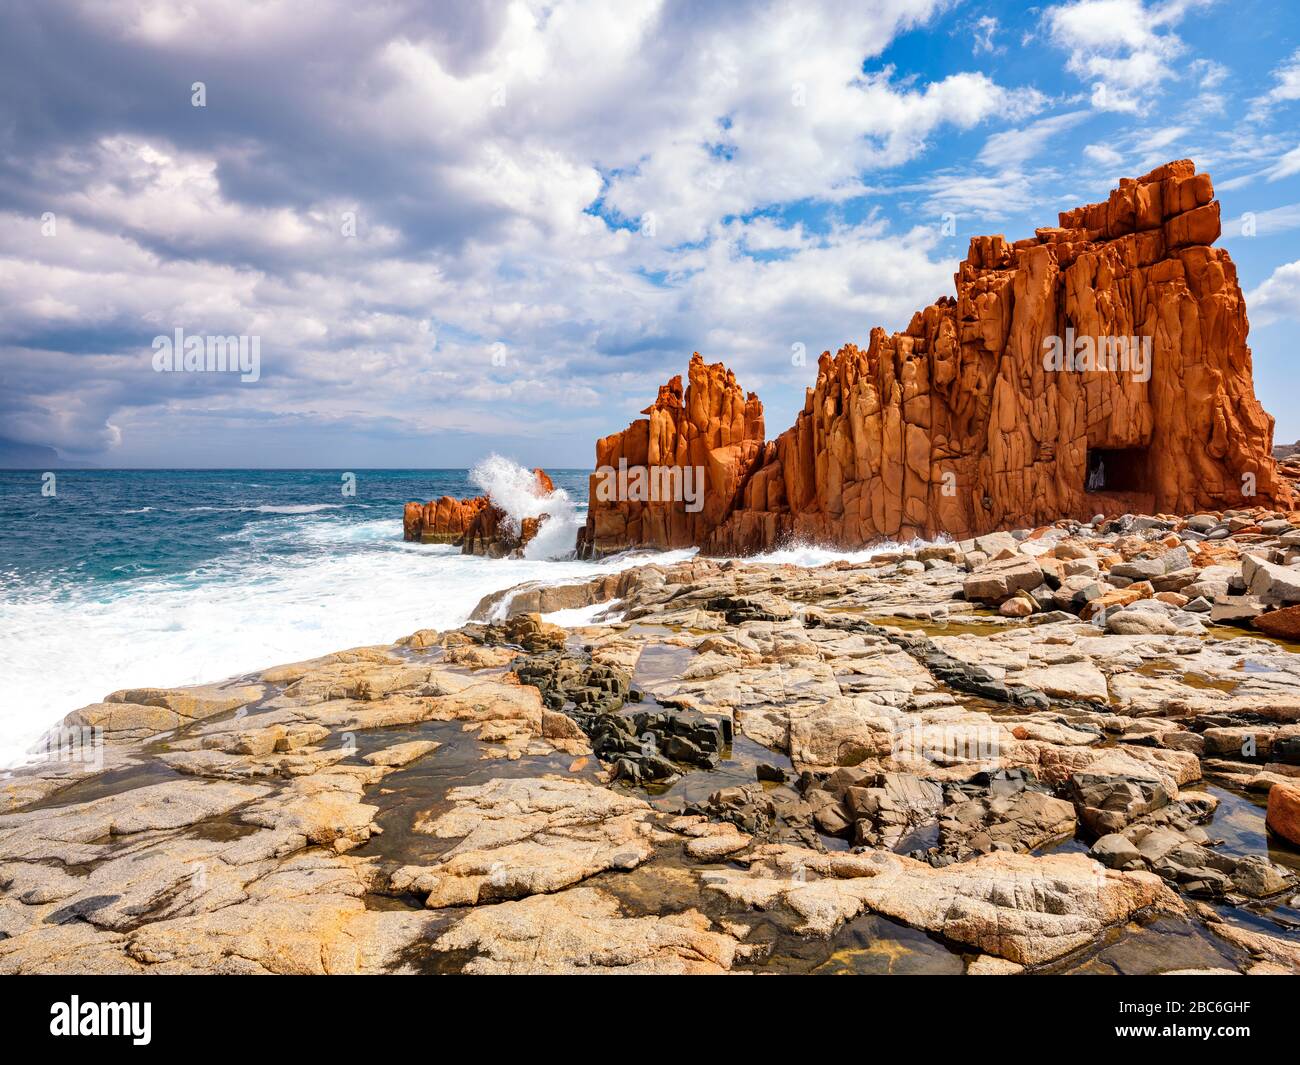 La silhouette del famoso reef porfiritico conosciuto come "rocce rosse" da Arbatax, Ogliastra, Capo Bellavista, Sardegna, Italia Foto Stock